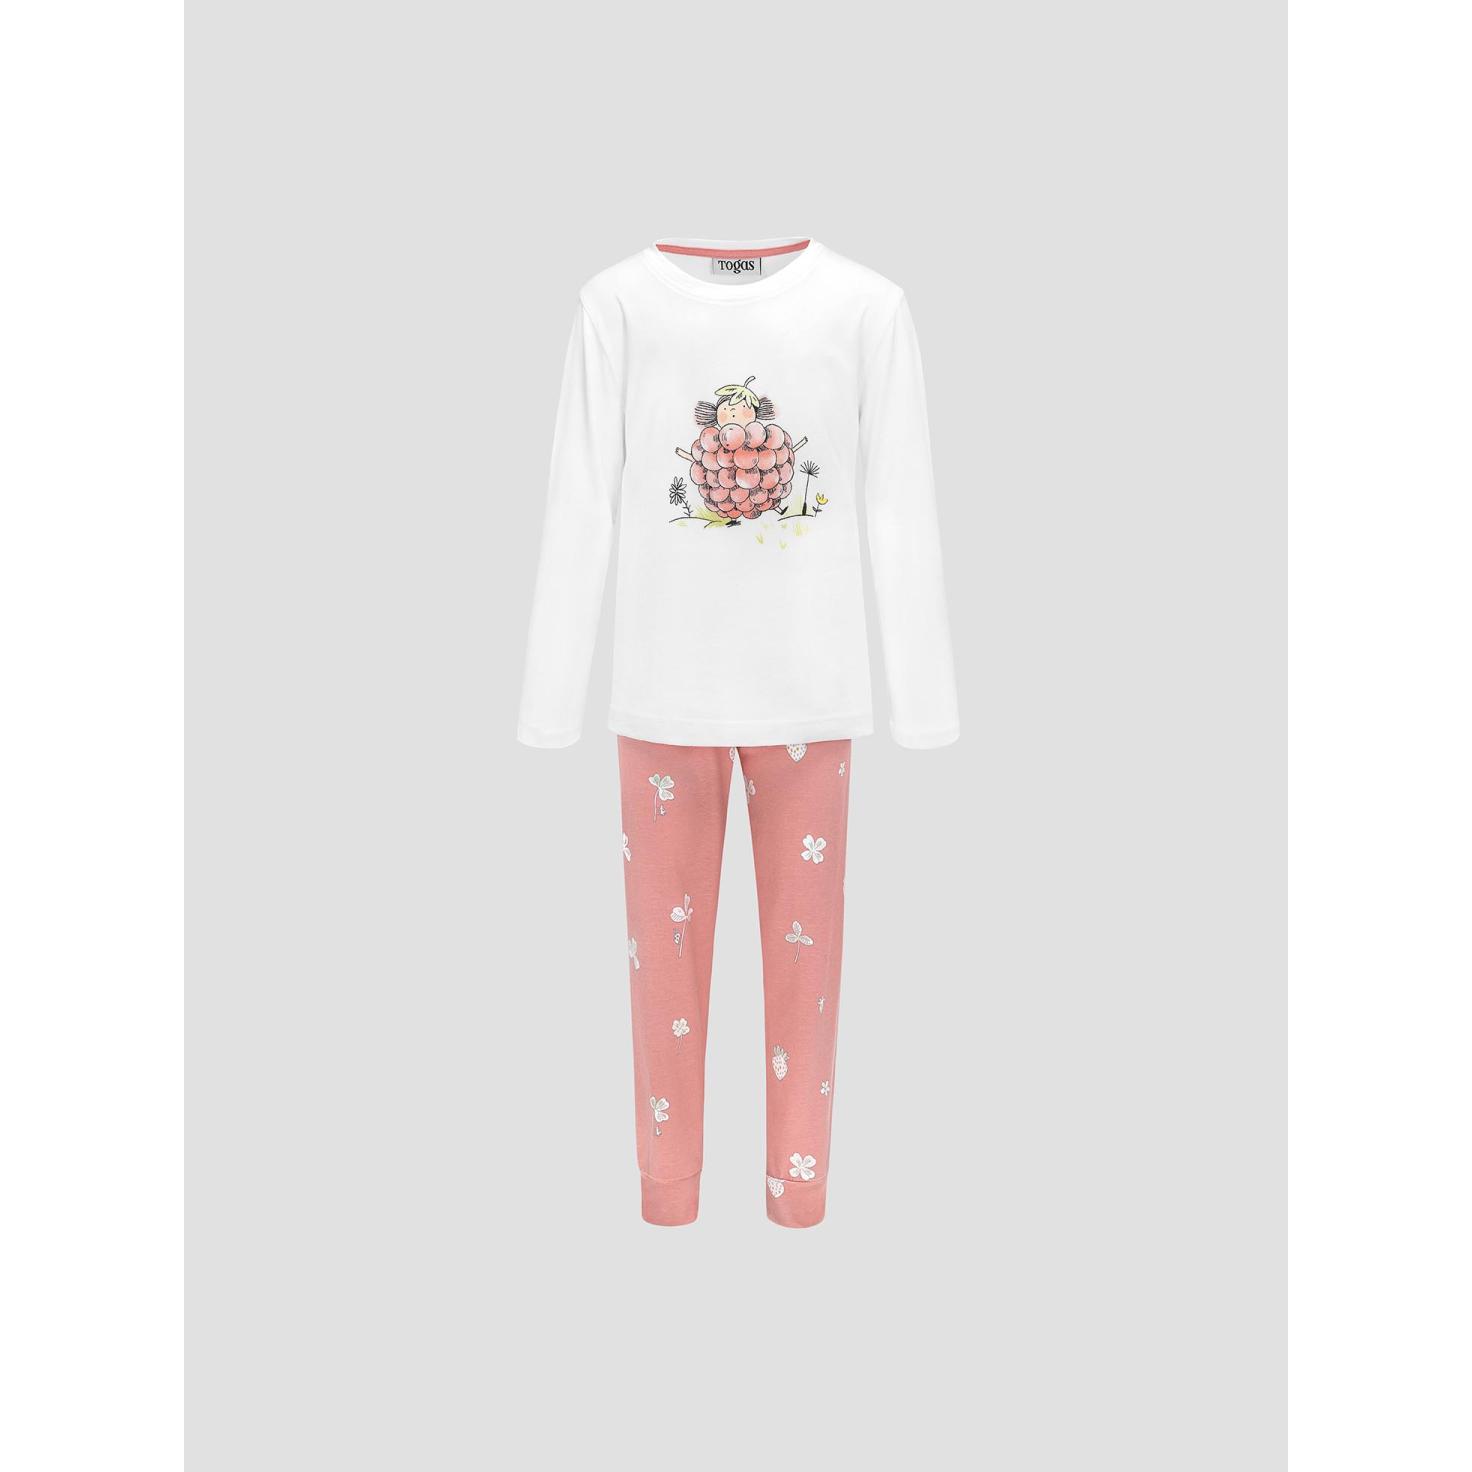 Пижама для девочек Kids by togas Стробби бело-розовый 140-146 см пижама для девочек kids by togas стробби бело розовый 104 110 см